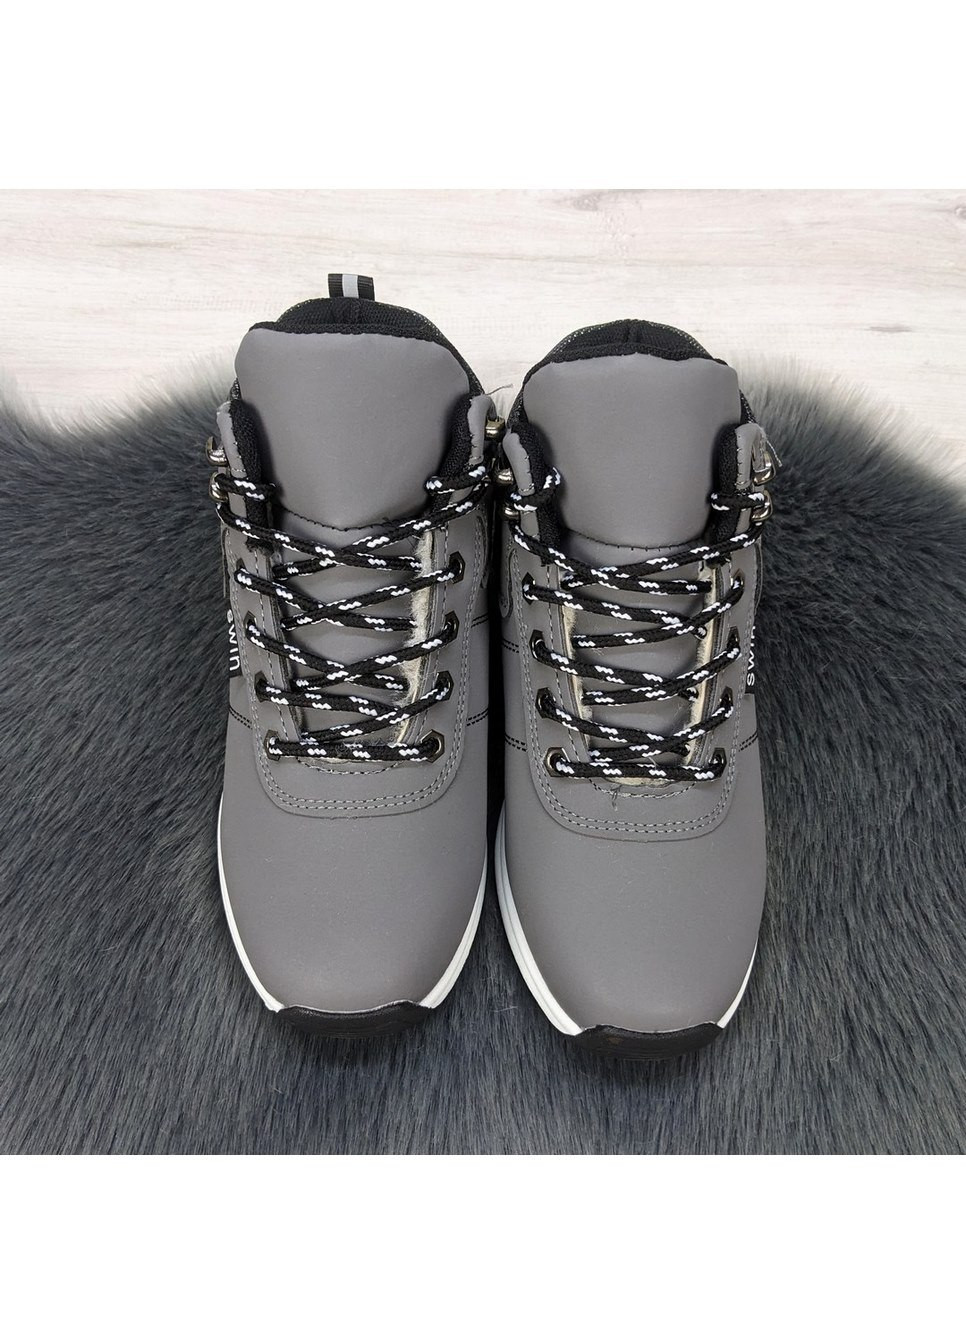 Зимние ботинки зимние женские на меху Dual из искусственного нубука